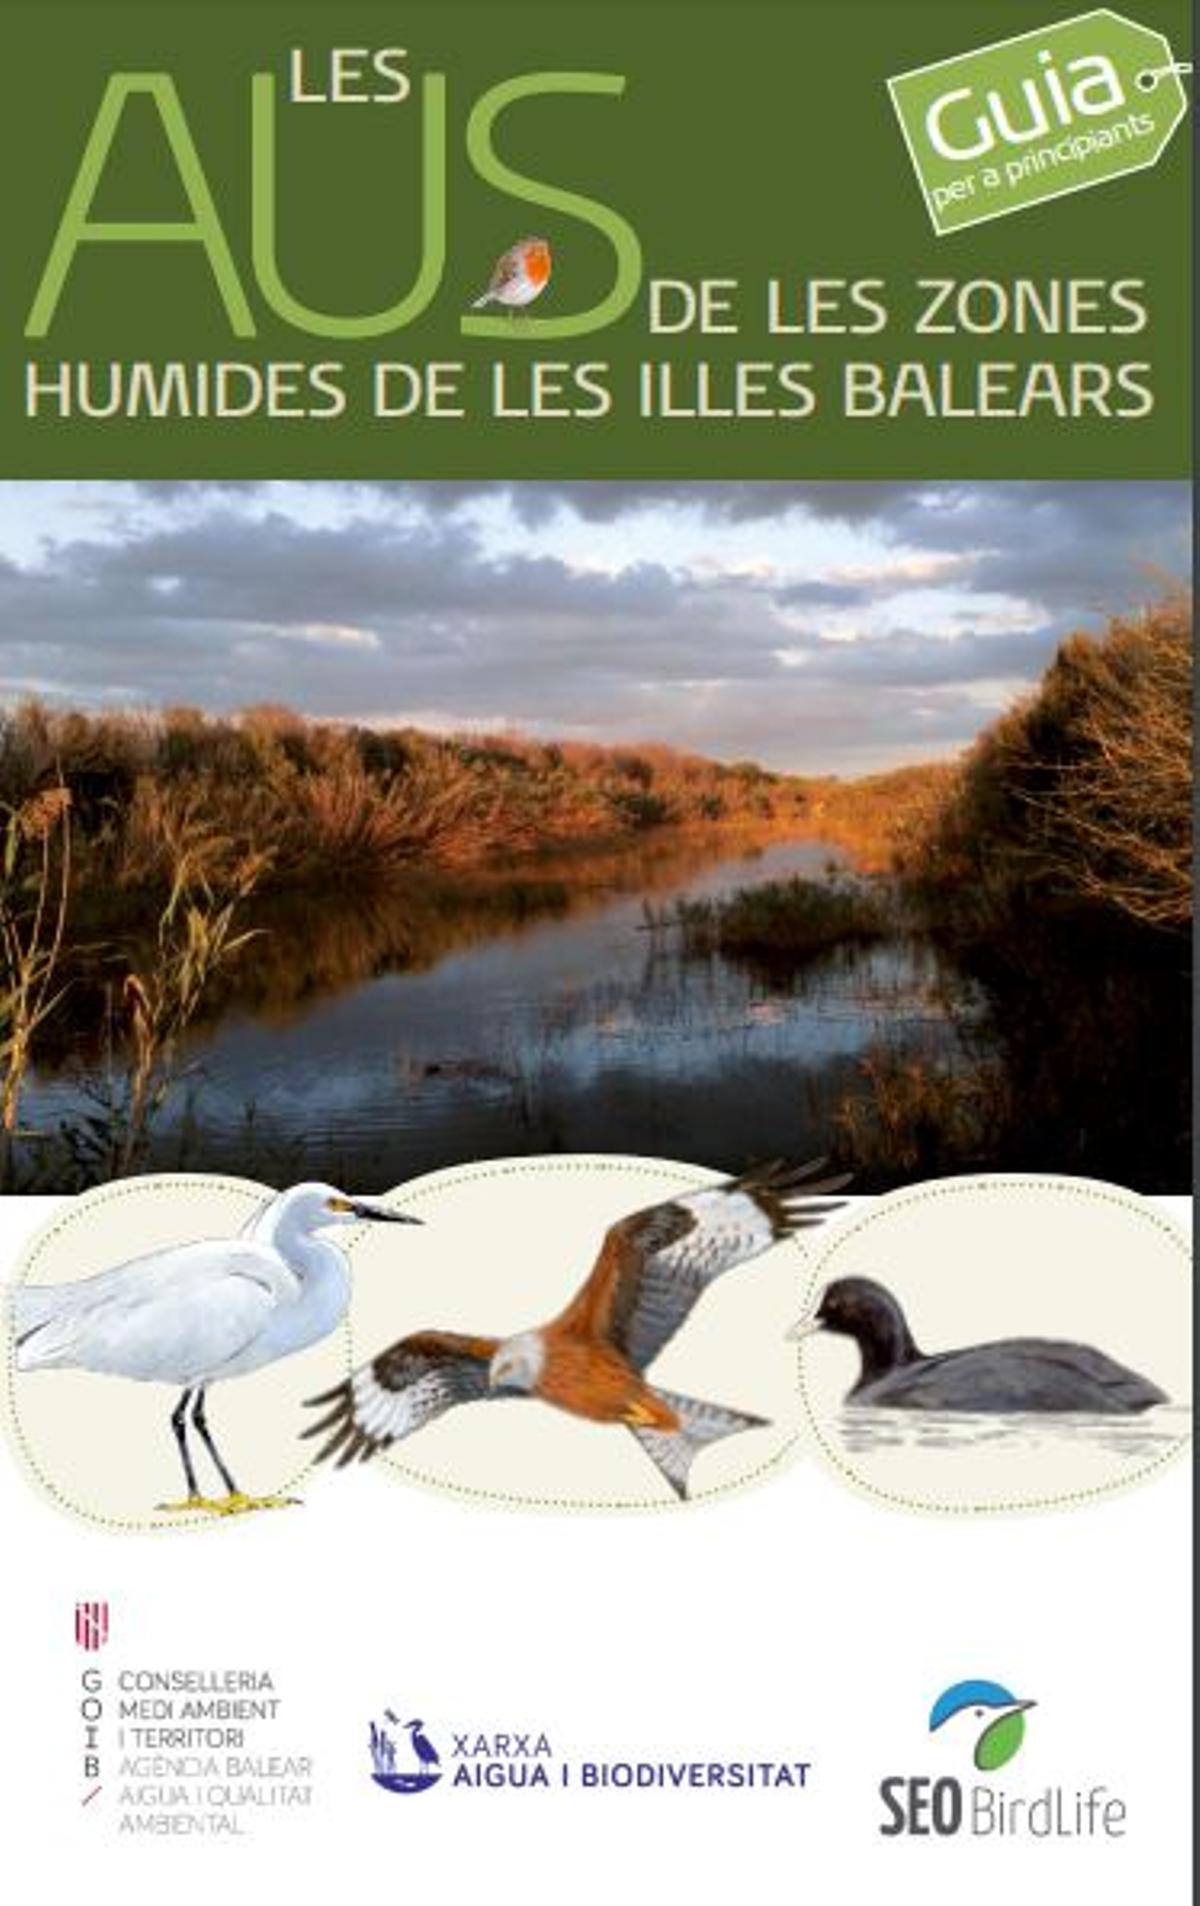 ¿Qué aves se pueden encontrar en las zonas húmedas de Mallorca?